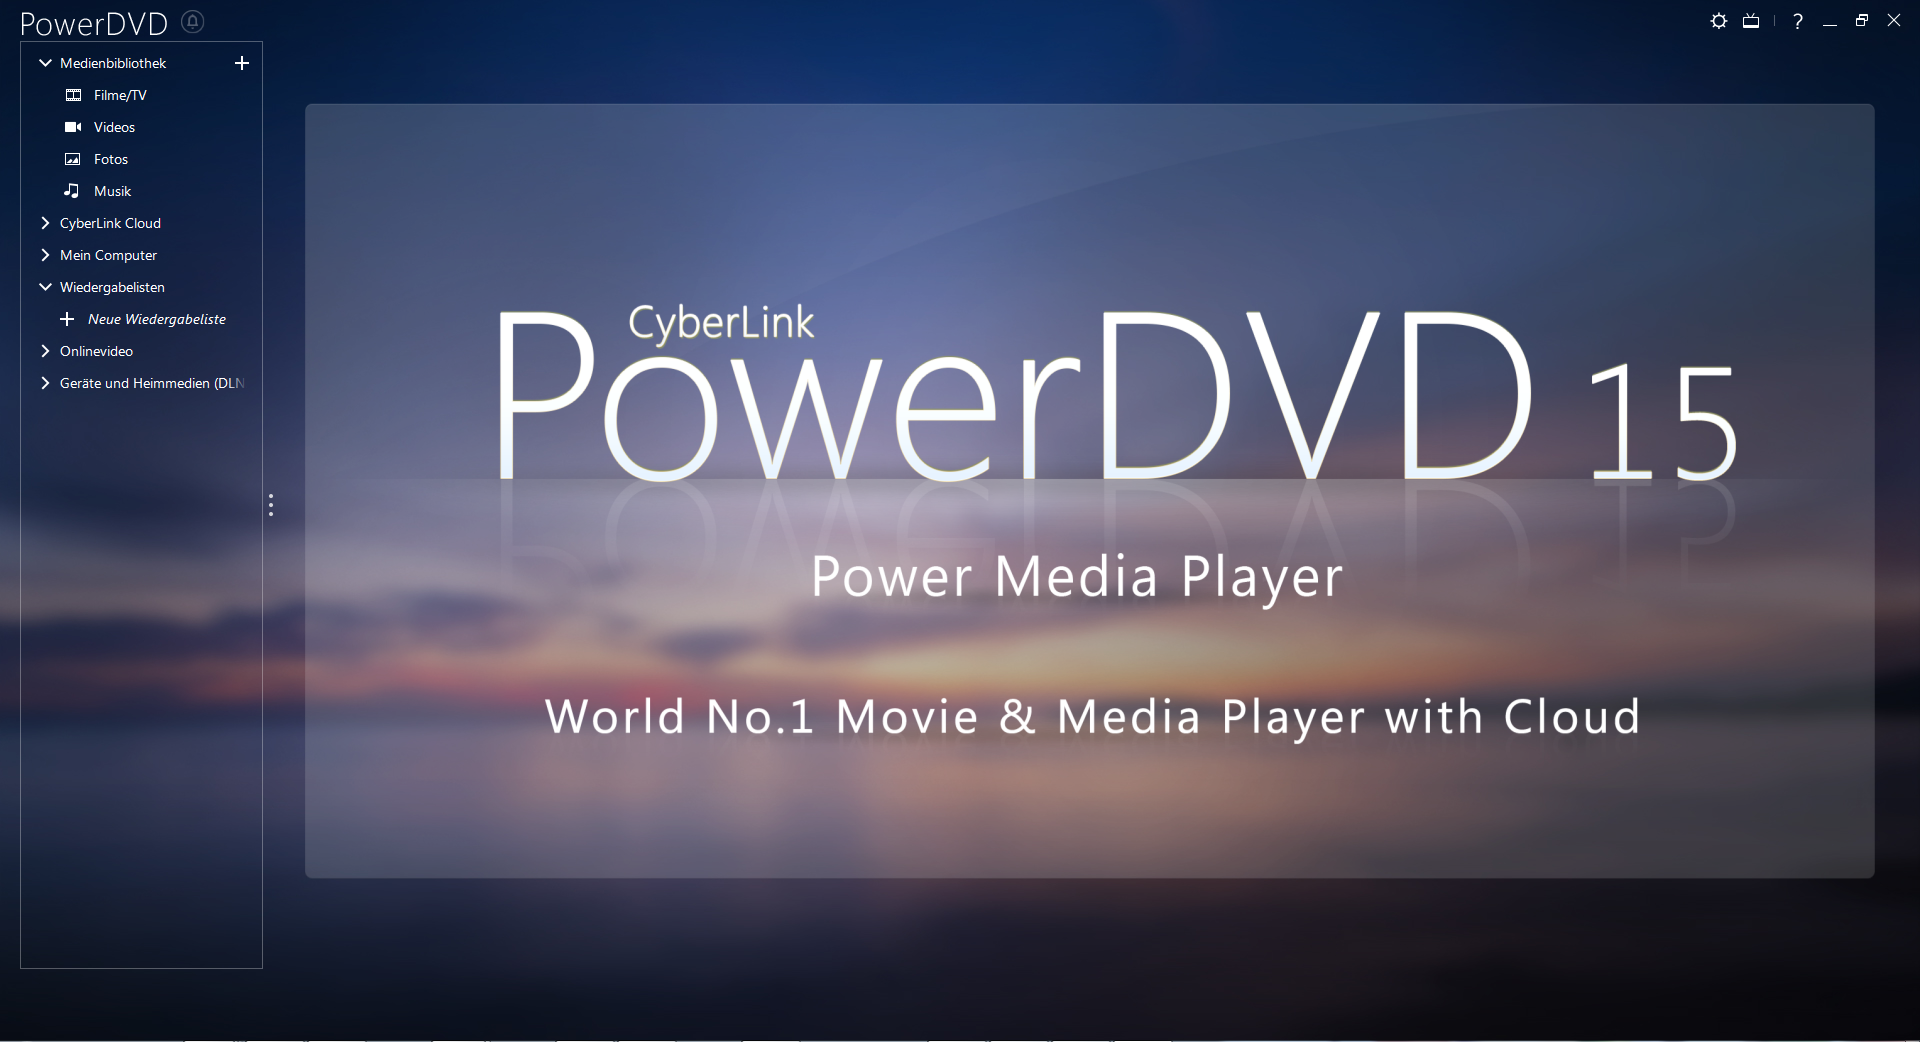 powerdvd 16 review